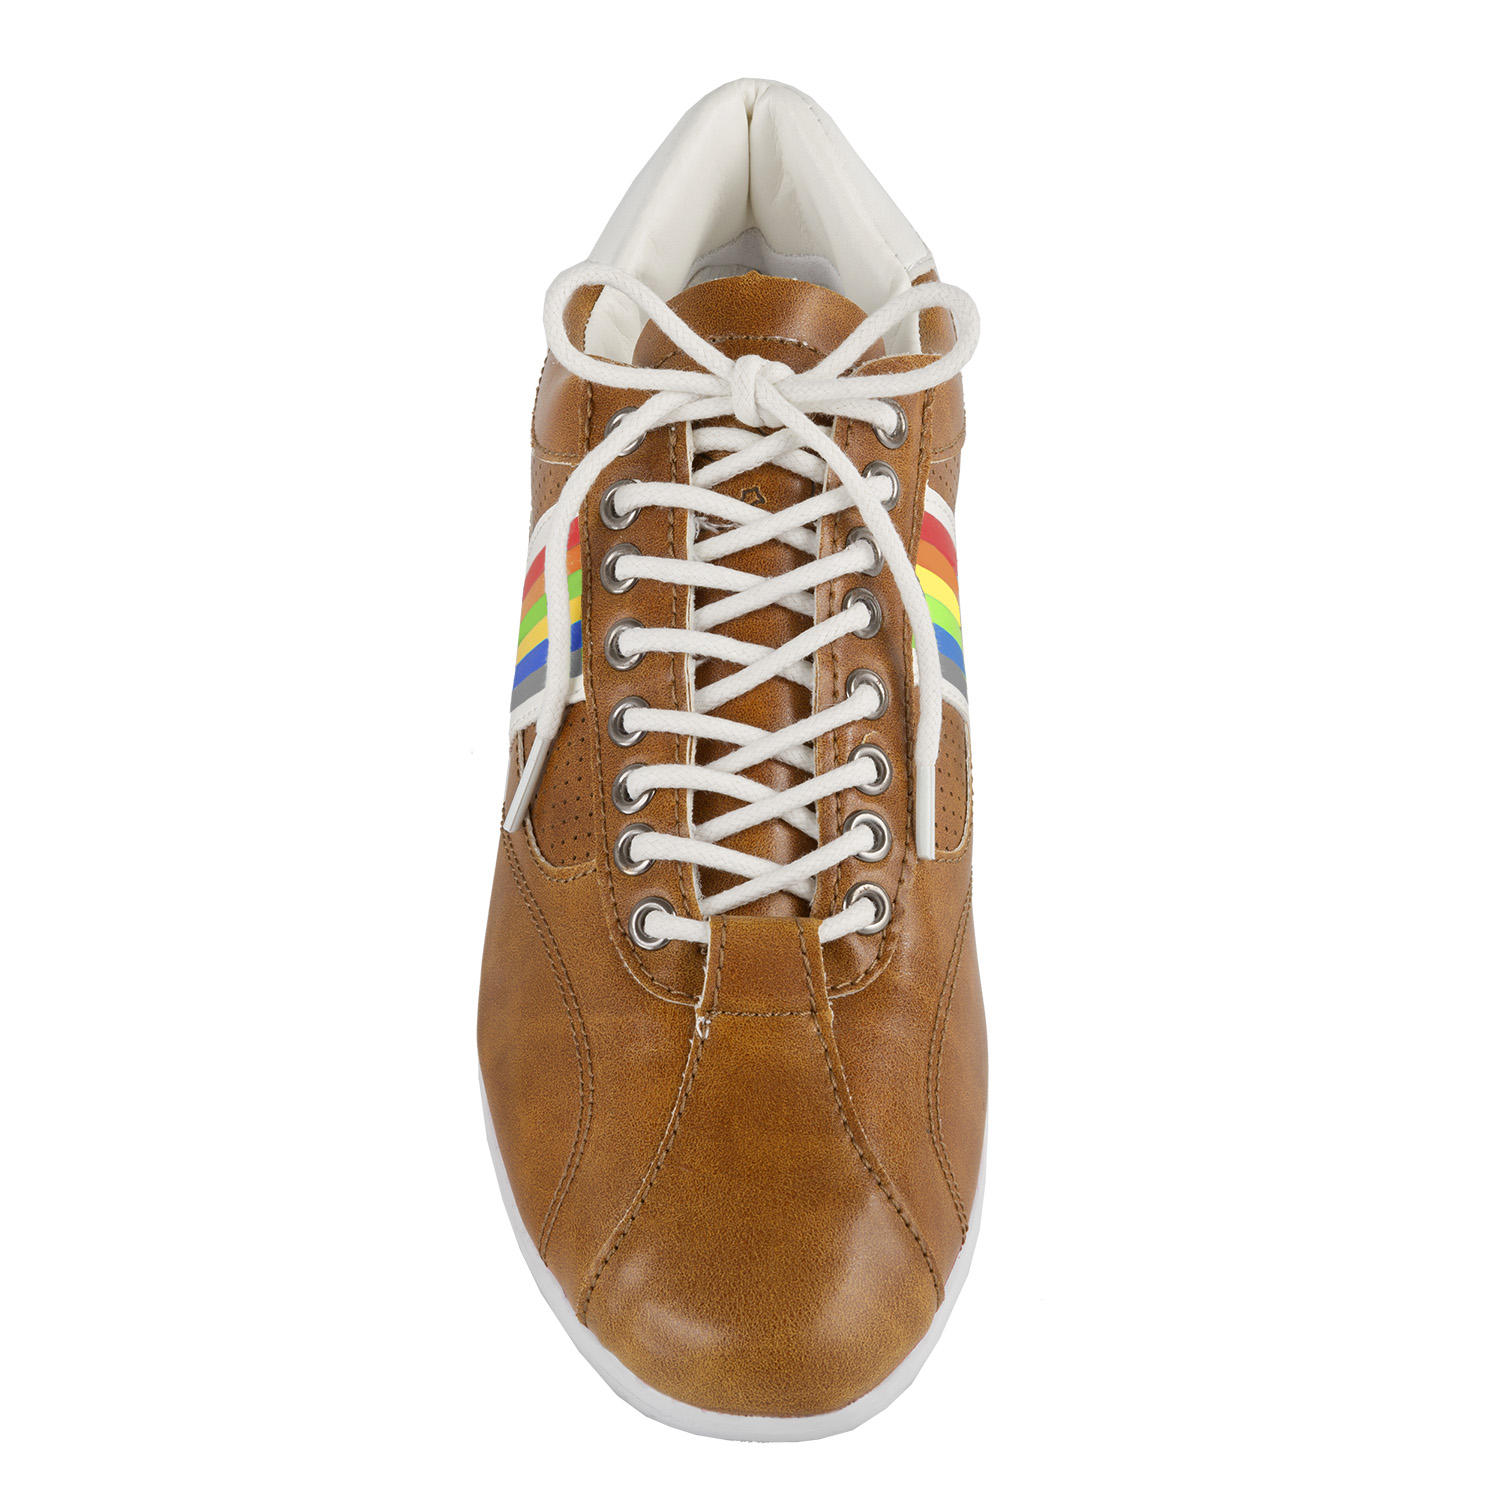 Freizeit-Schuh Vintage Gr. 40 in Braun/Weiß/Multicolor